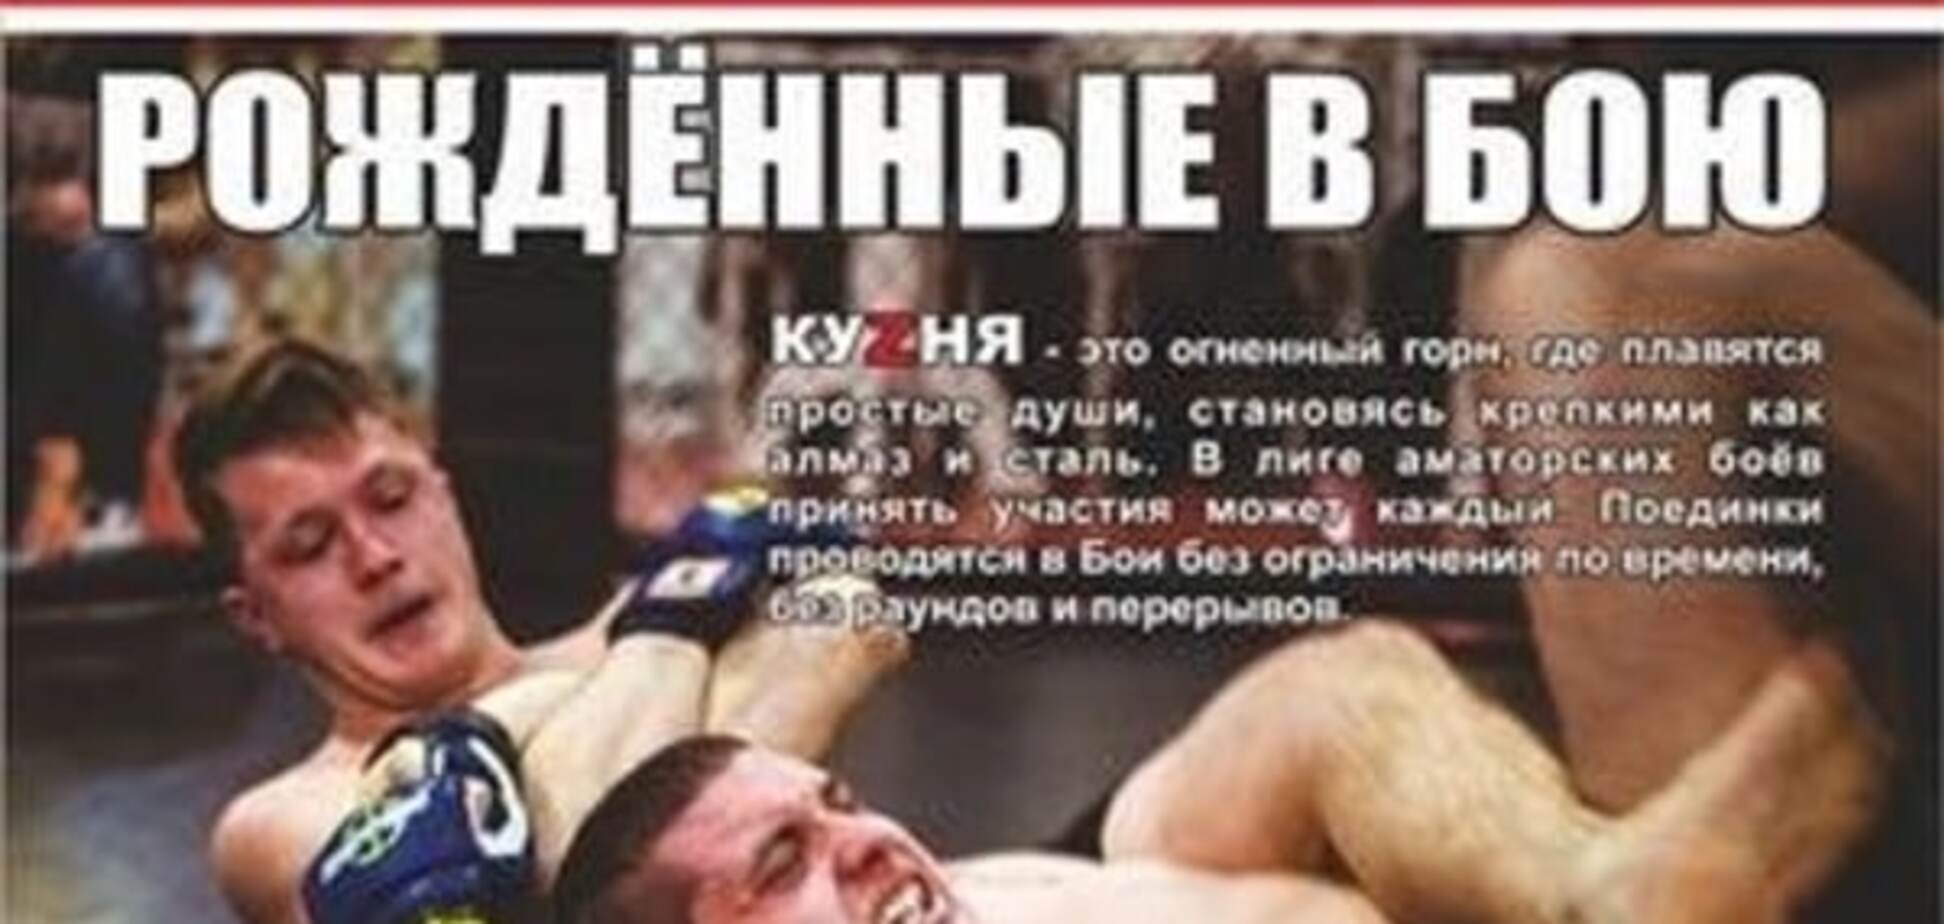 Рожденные в бою: 30 июля в Киеве состоится MMA турнир КУZНЯ